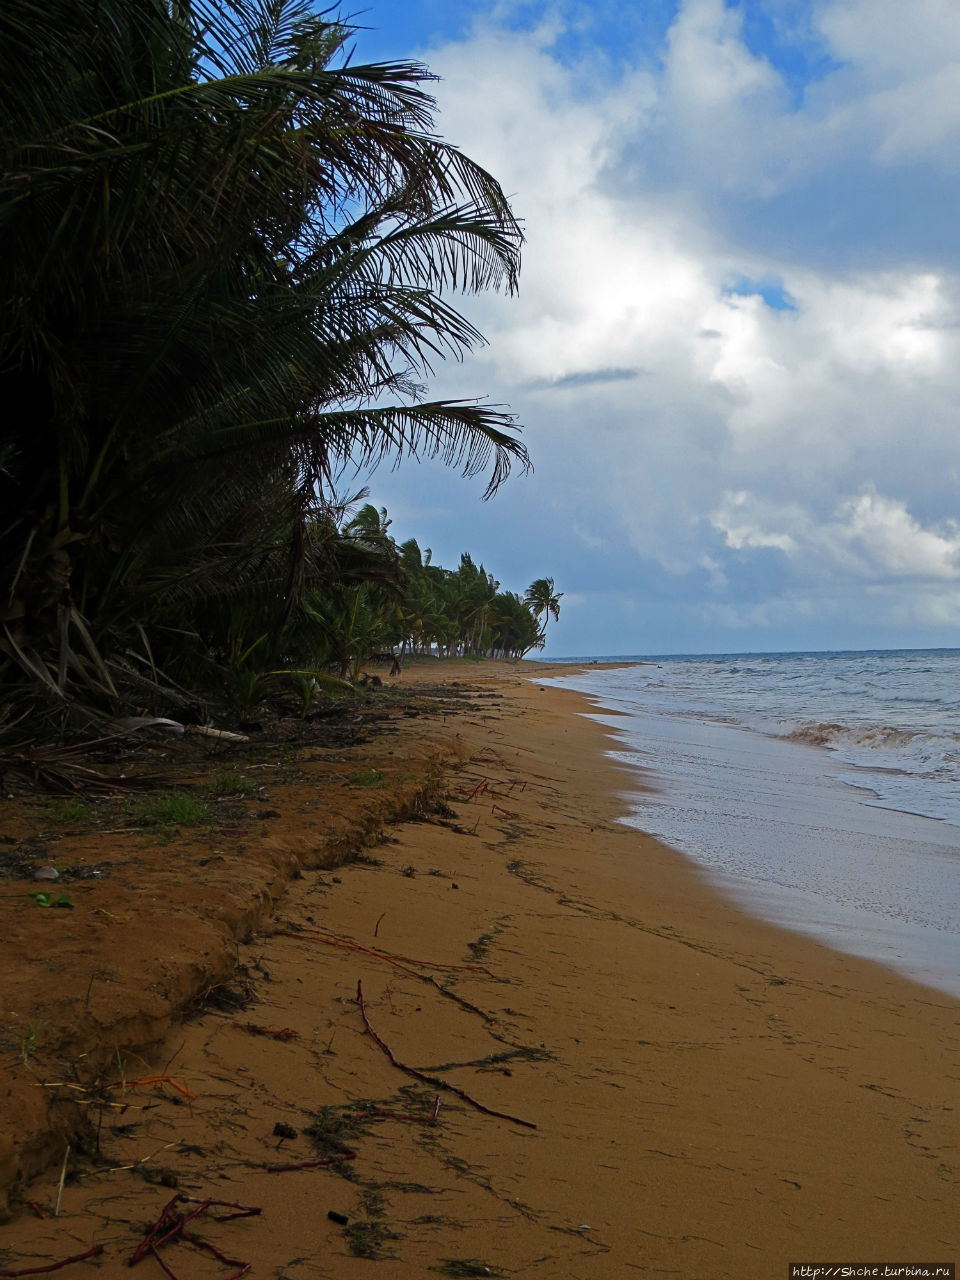 Типа пляжный отдых в Пуэрто-Рико - 1,5 купаний за неделю